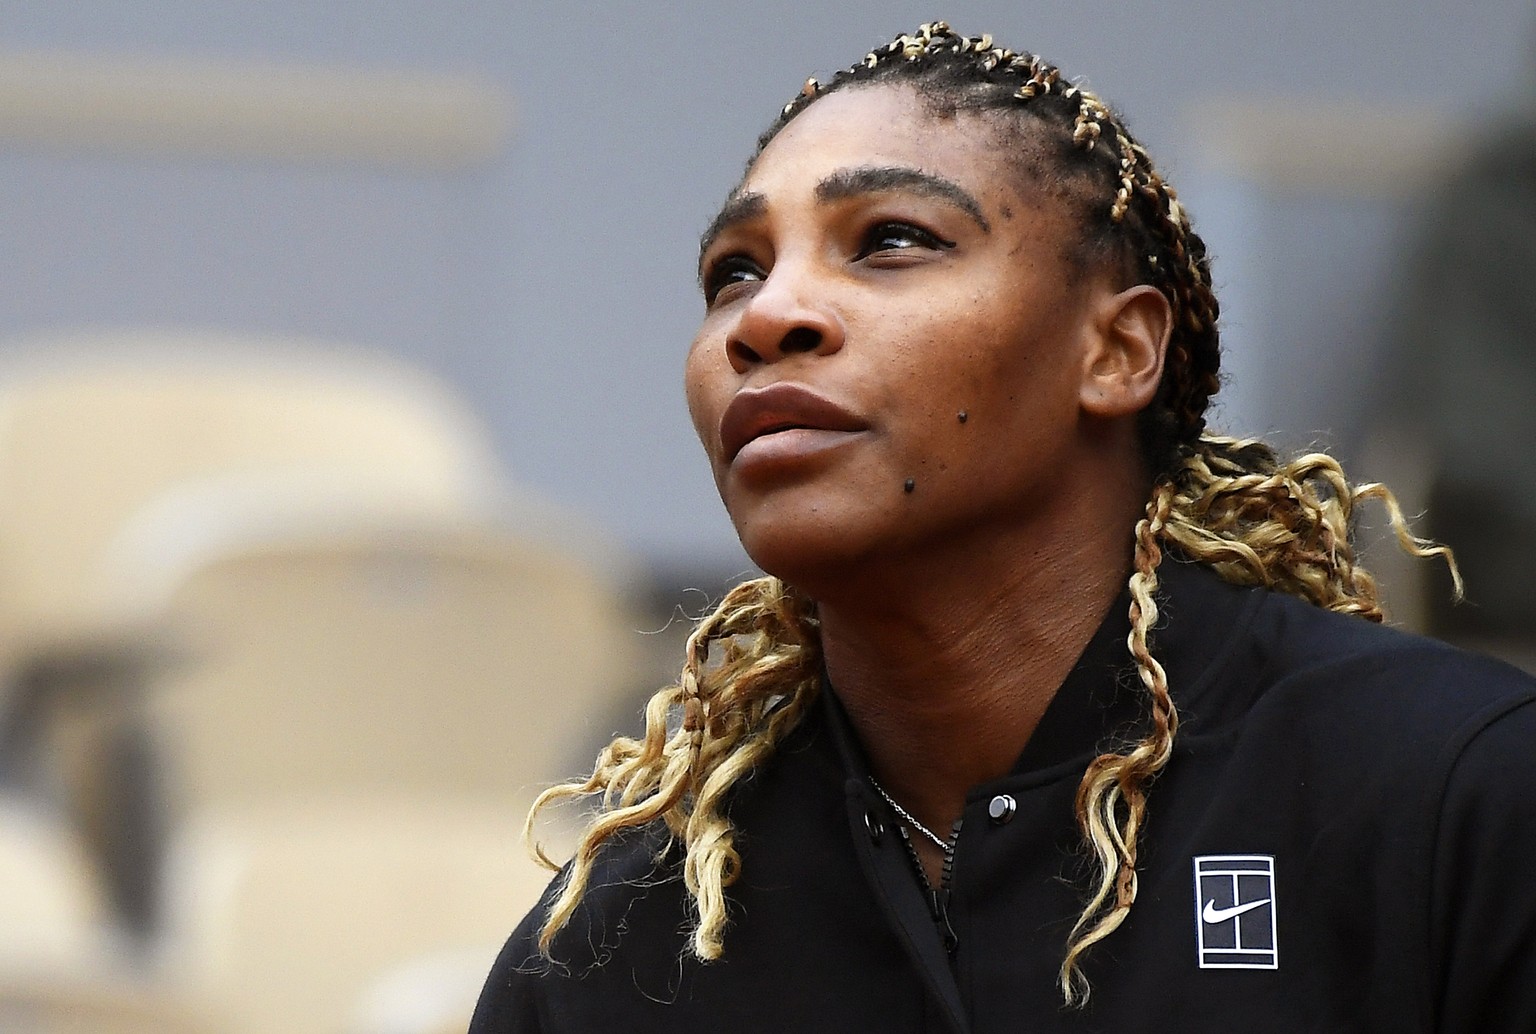 Seit vier Jahren wartet Serena Williams auf ihren 24. Grand-Slam-Titel. Sie würde damit die Rekordmarke von Margaret Court überflügeln.